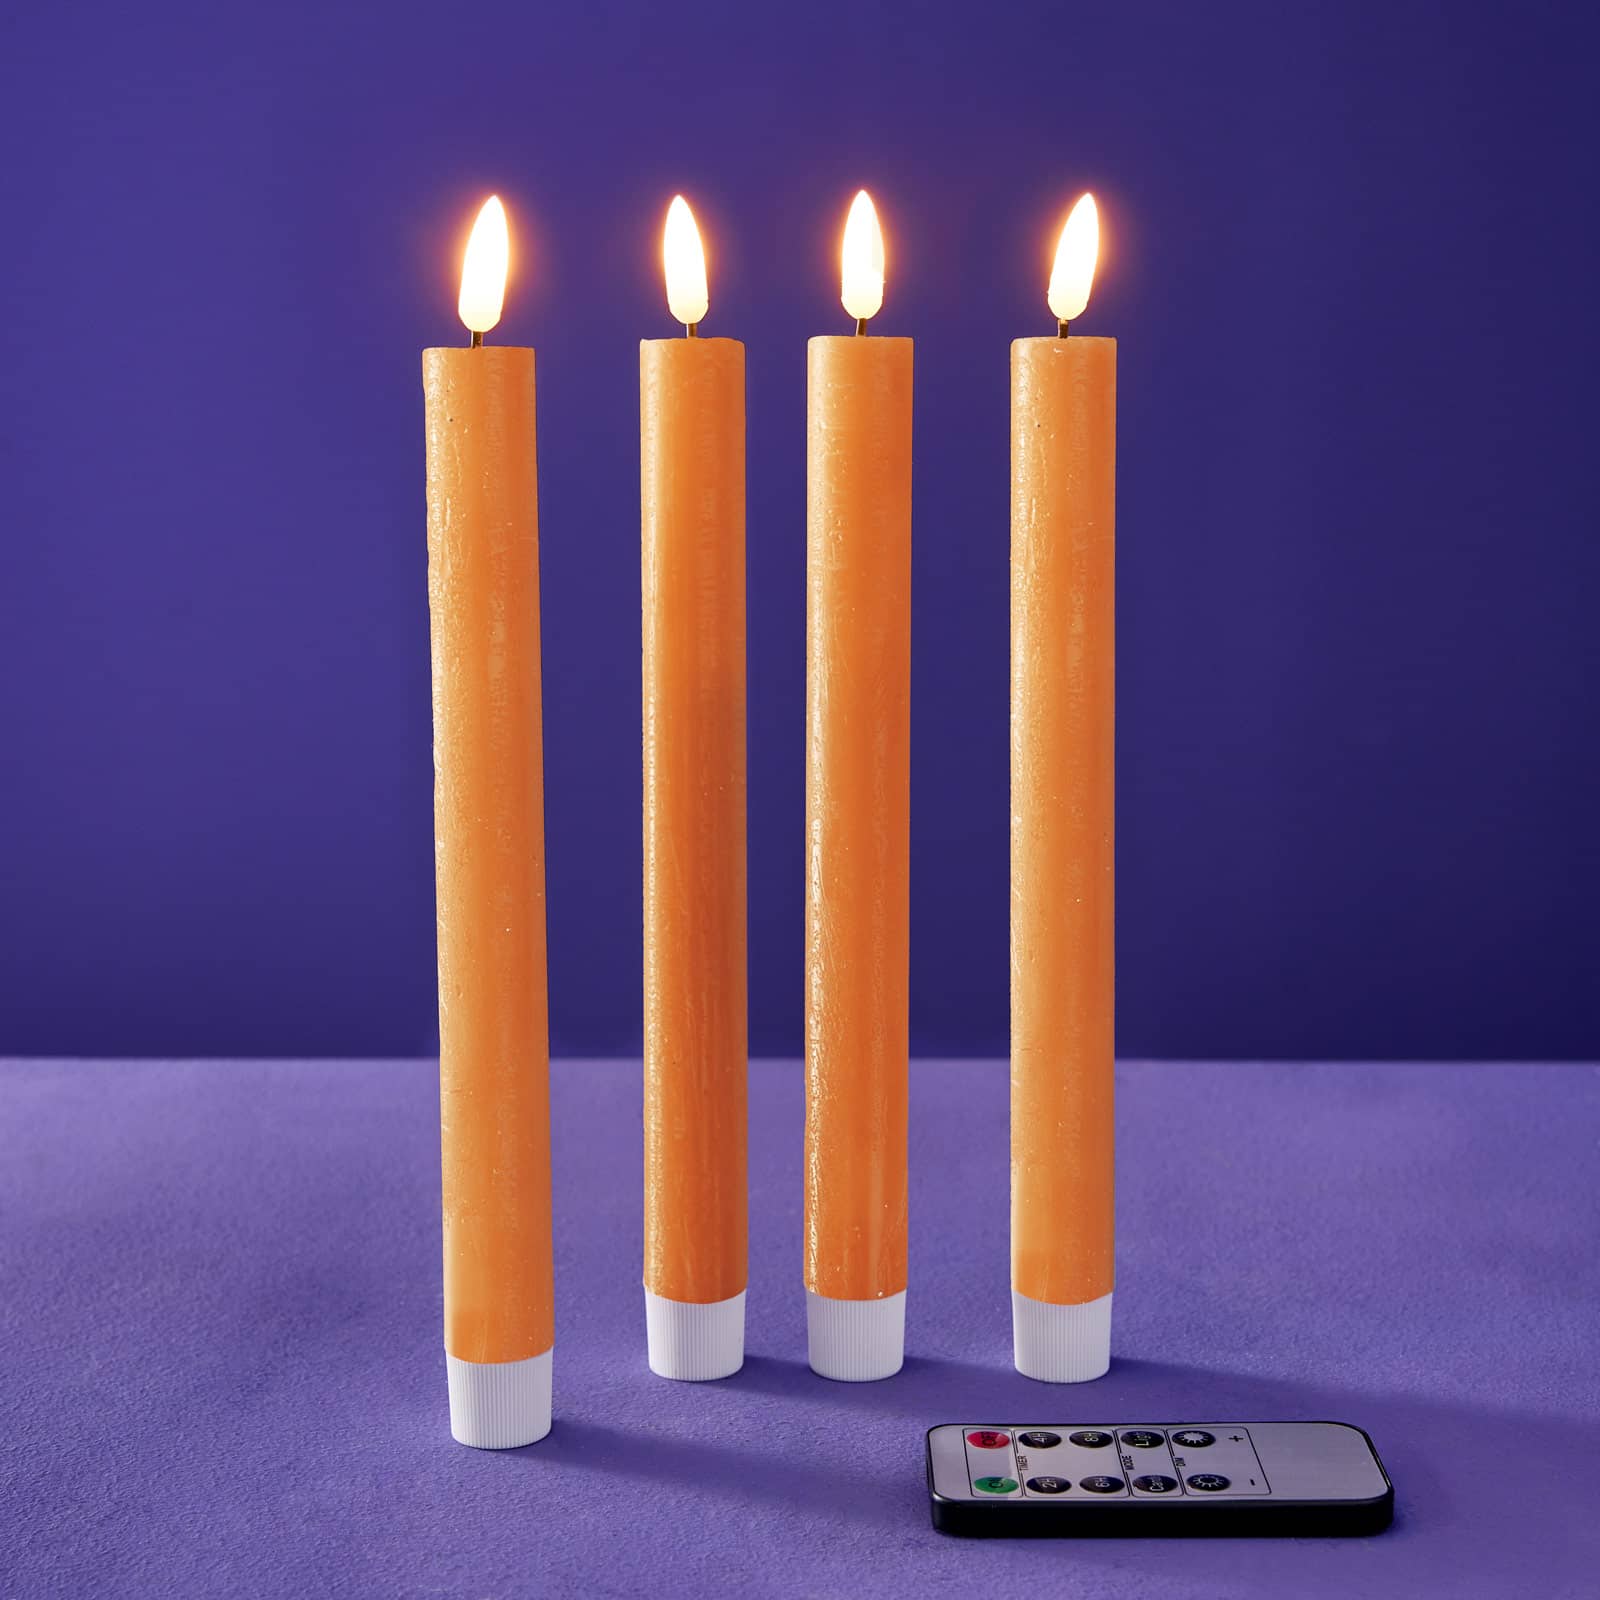 Lot de 4 bougies bâton LED, orange, cire véritable/plastique/LED, H. 24,5  cm avec télécommande (pile CR2025 incluse), 4 fonctions minuterie,  variable, 2 modes d'éclairage, fonctionne sur piles : 2xAAA (non incluses)